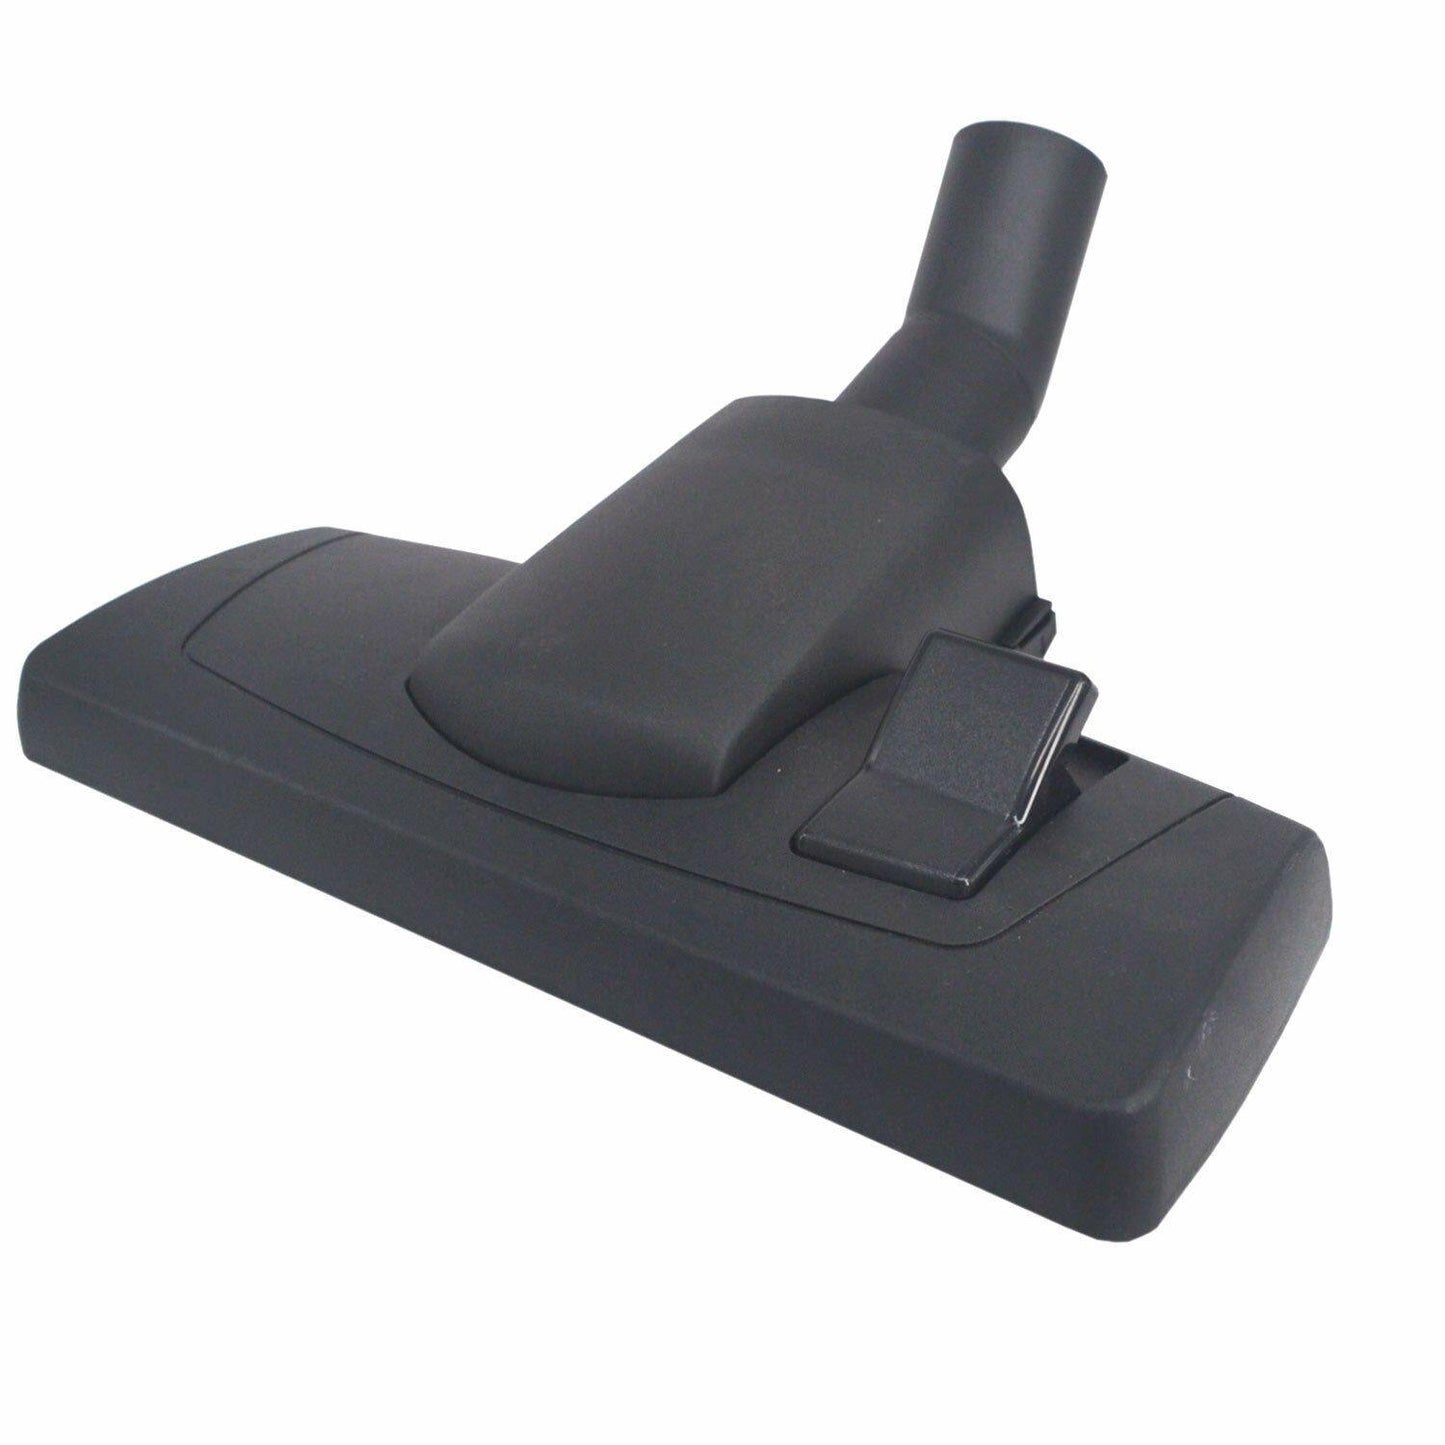 Vacuum Cleaner Floor Head Tool For Nilfisk VL500 35 Basic Commercial Wet & Dry Sparesbarn